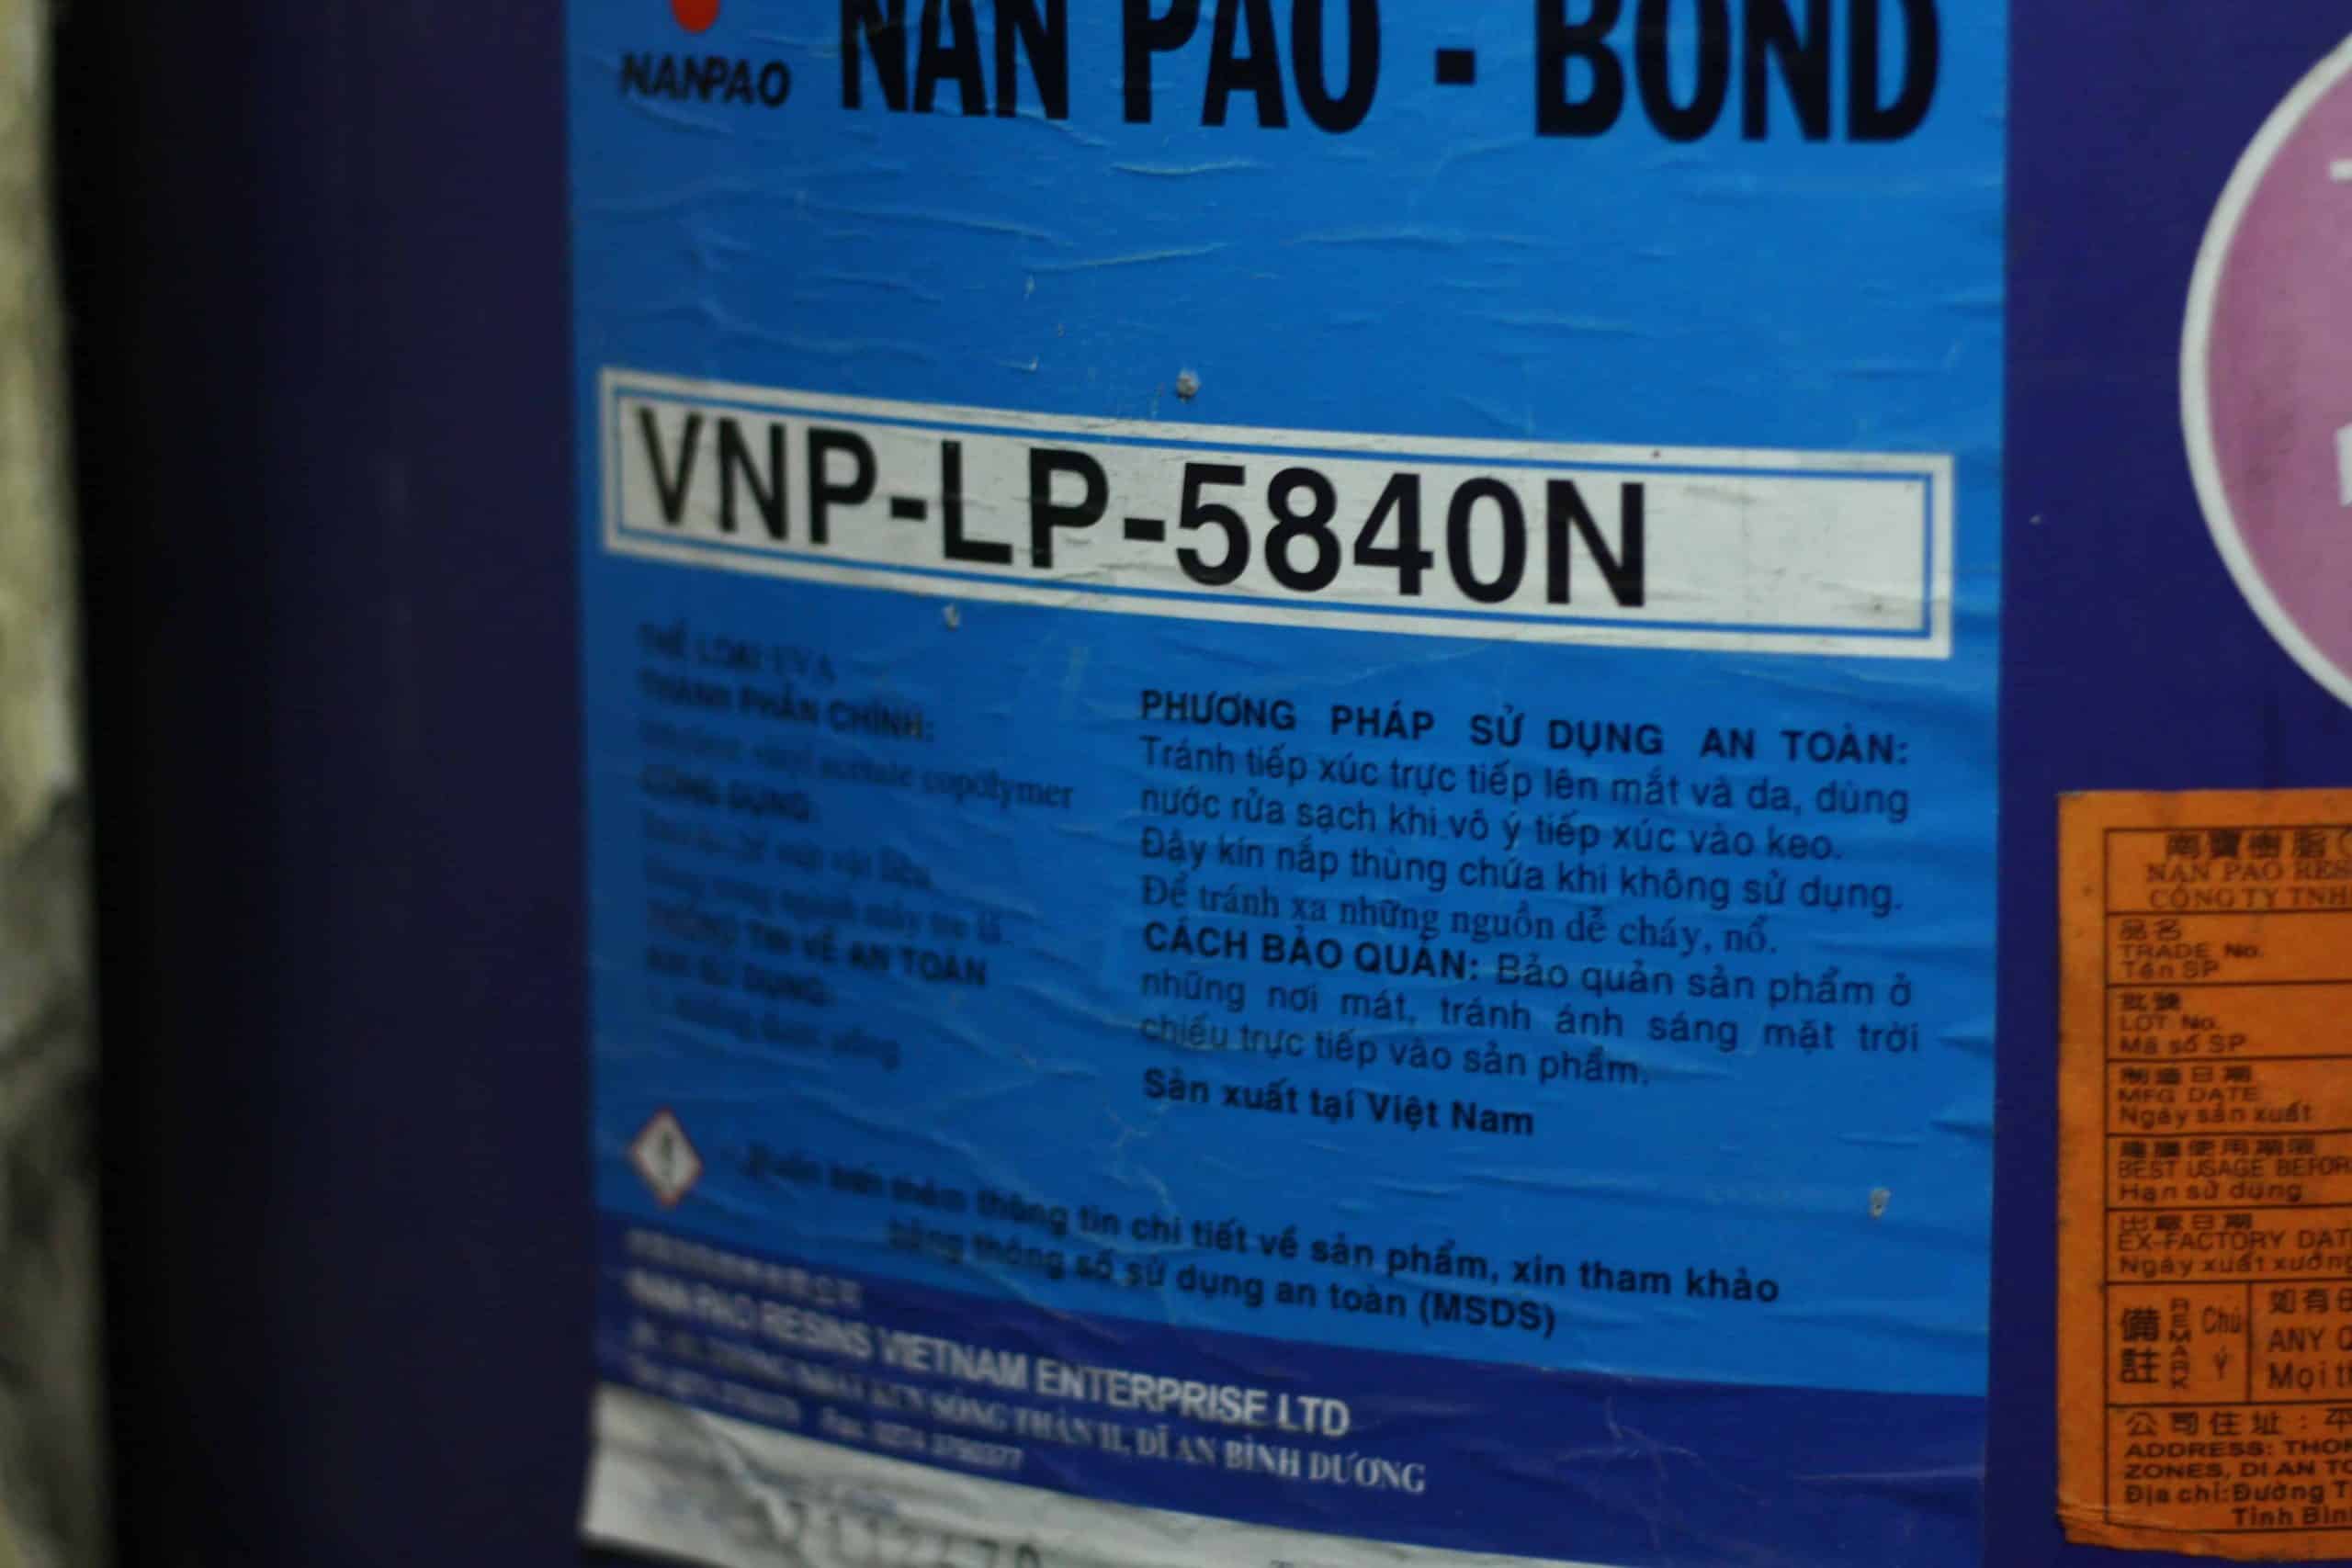 Keo sữa cán màng VNP-LP-5840N